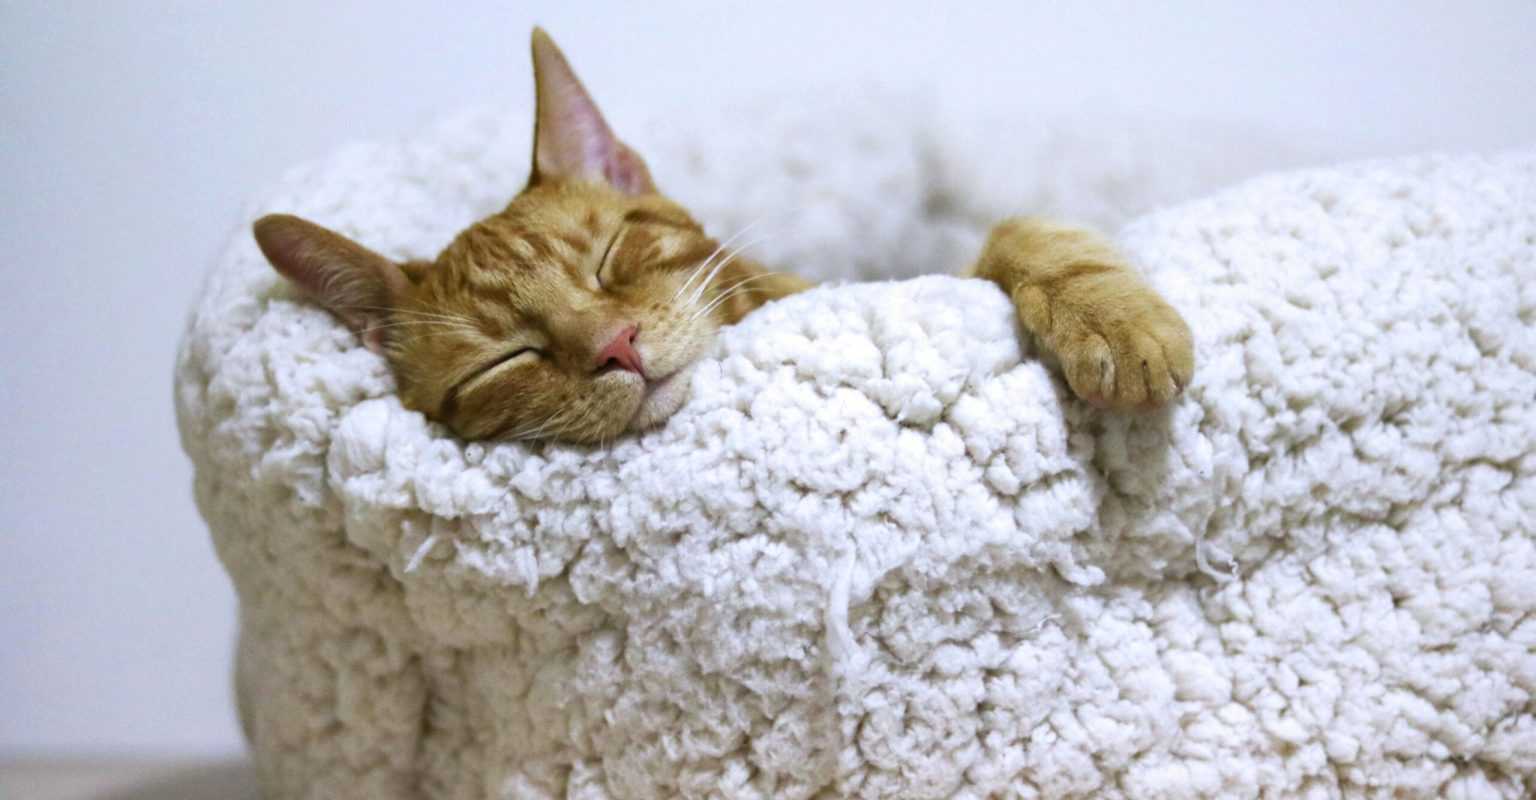 An orange cat sleeps snugly in a fluffy, woollen bed.